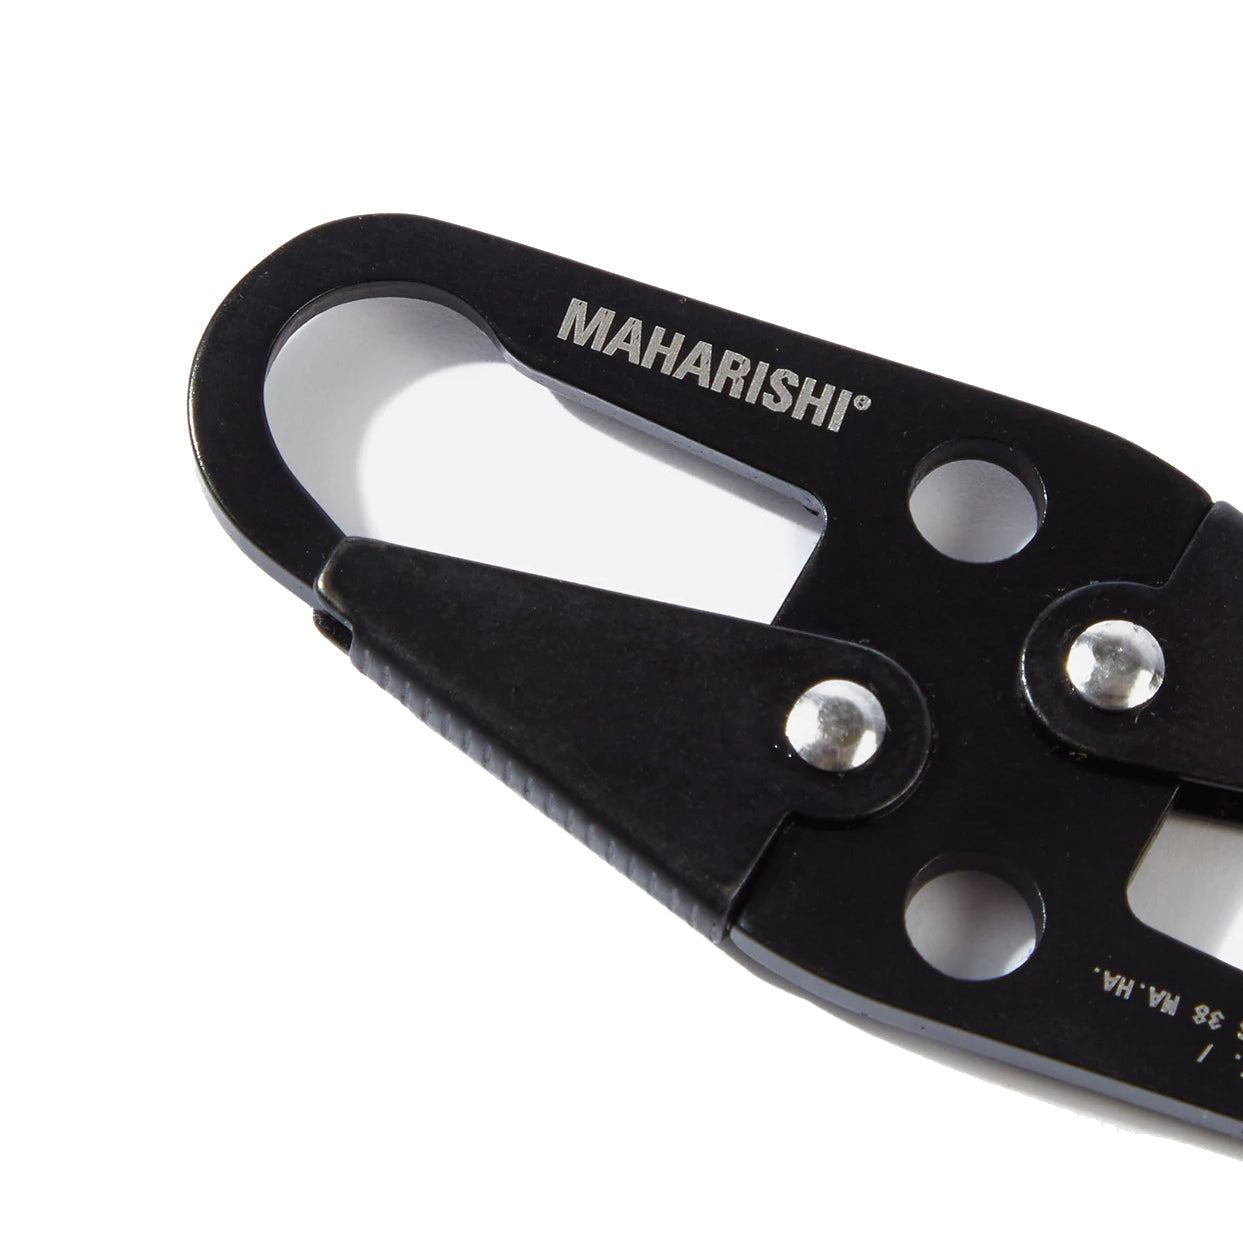 Maharishi Key Clip Black - ACCESSORIES - Canada